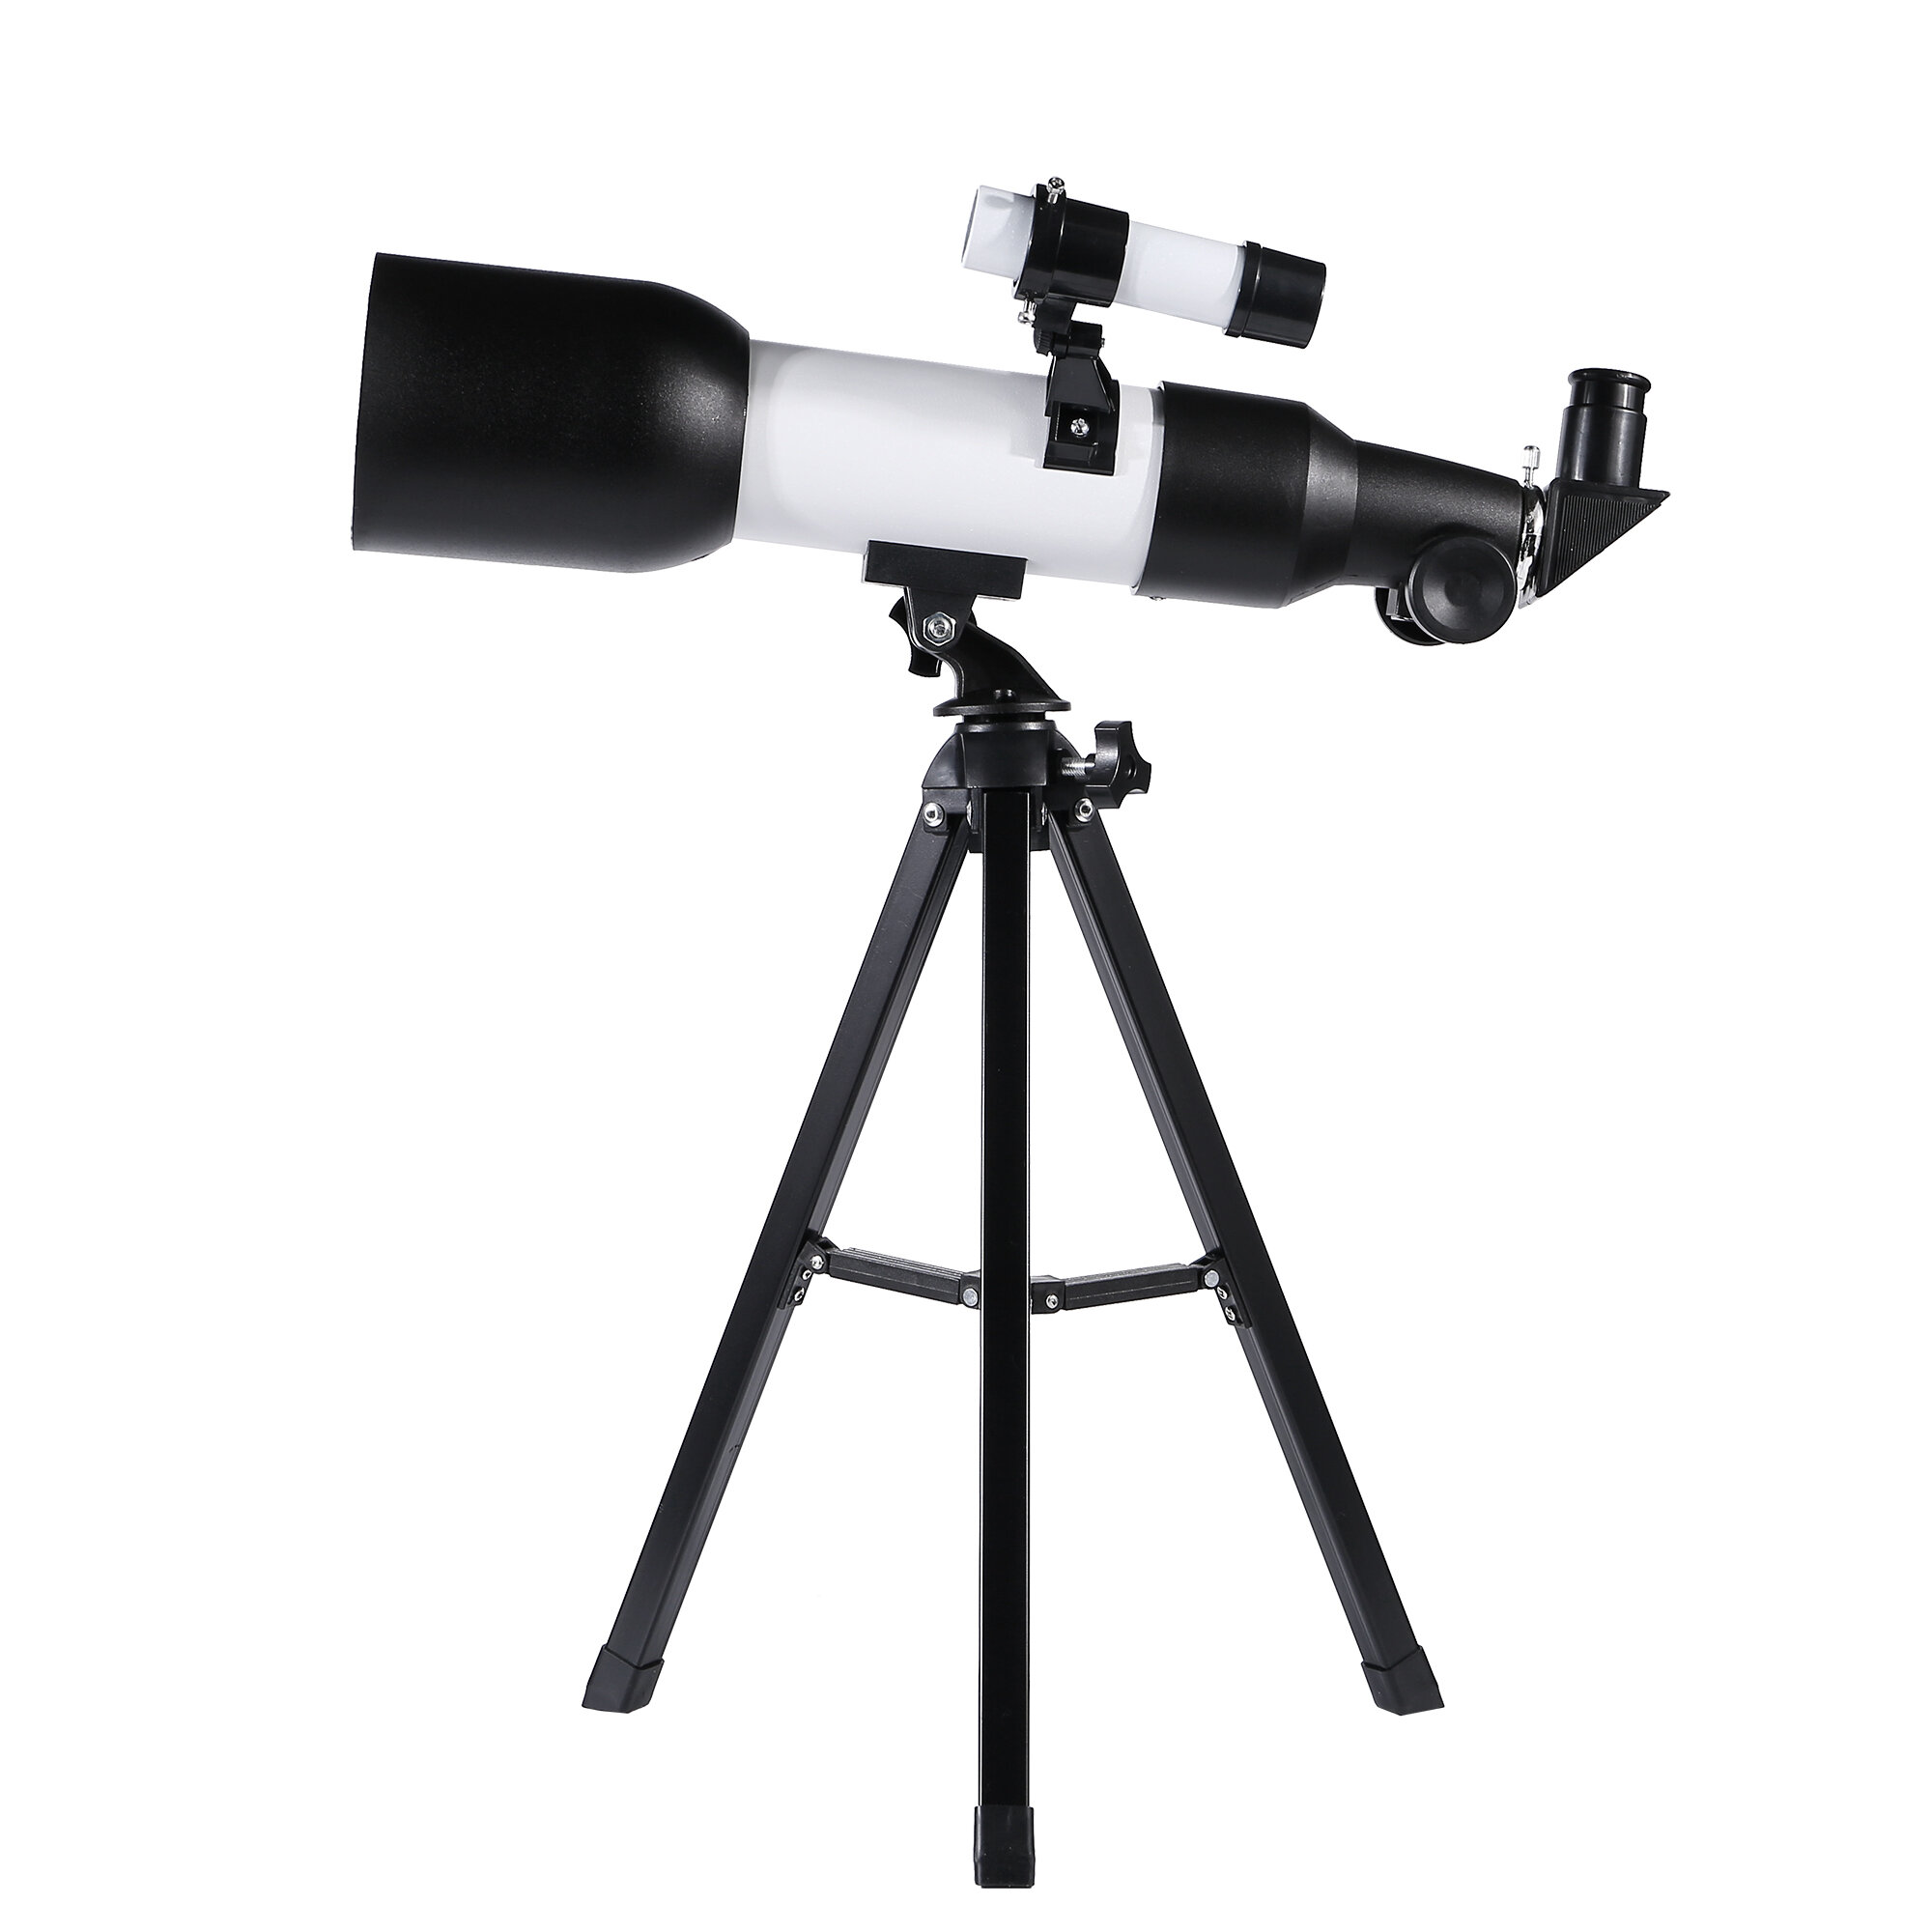 Рефлекторный телескоп Eyebre 120x Professional HD для астрономии с детектором низкого уровня освещенности и штативом для наблюдения за звездами в дальнем космосе.